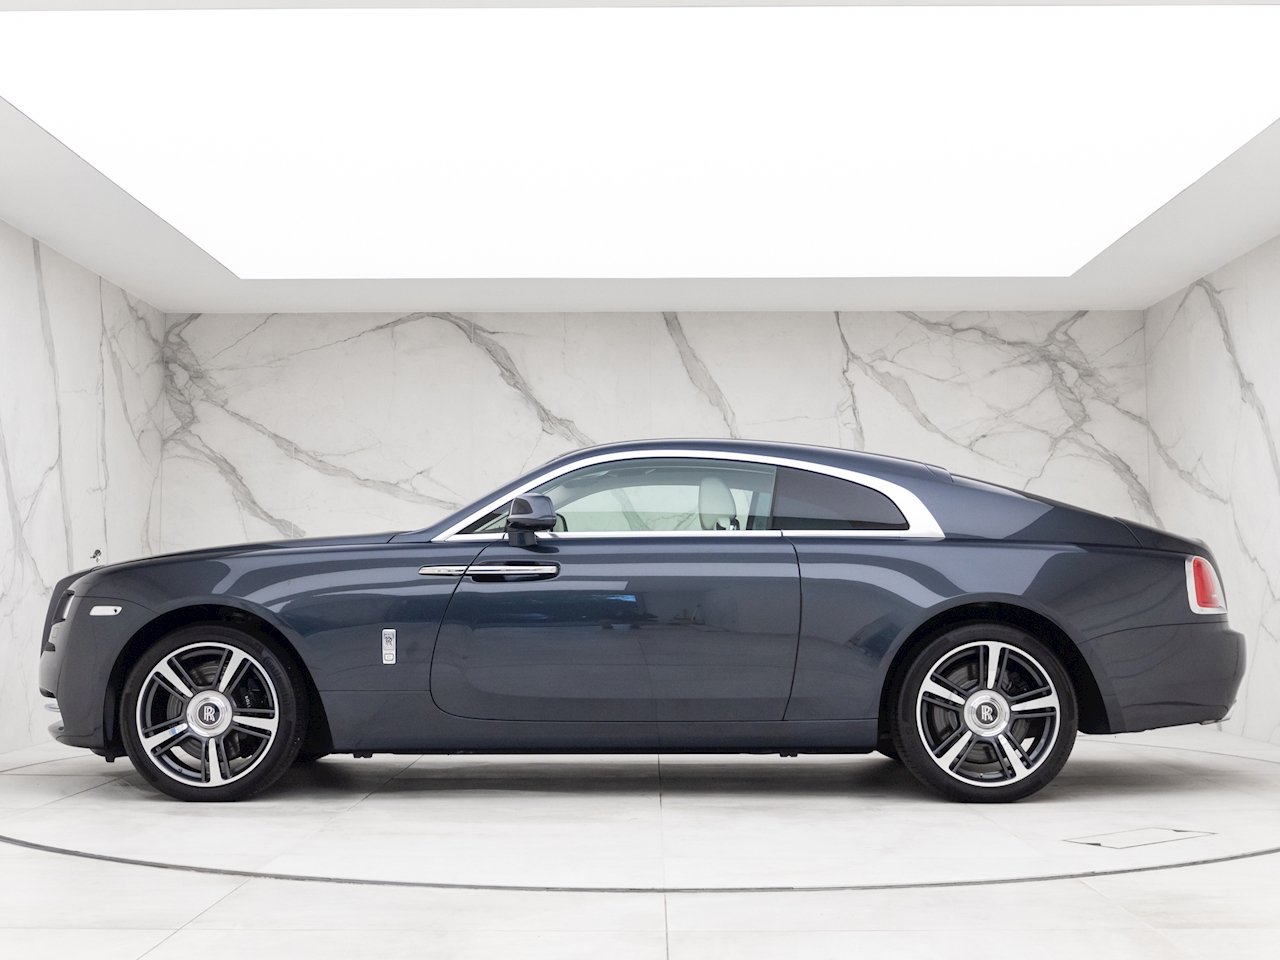 Rolls Royce Wraith Custom Satin Gray Wrap On Lexani Wheels  Auto  Discoveries